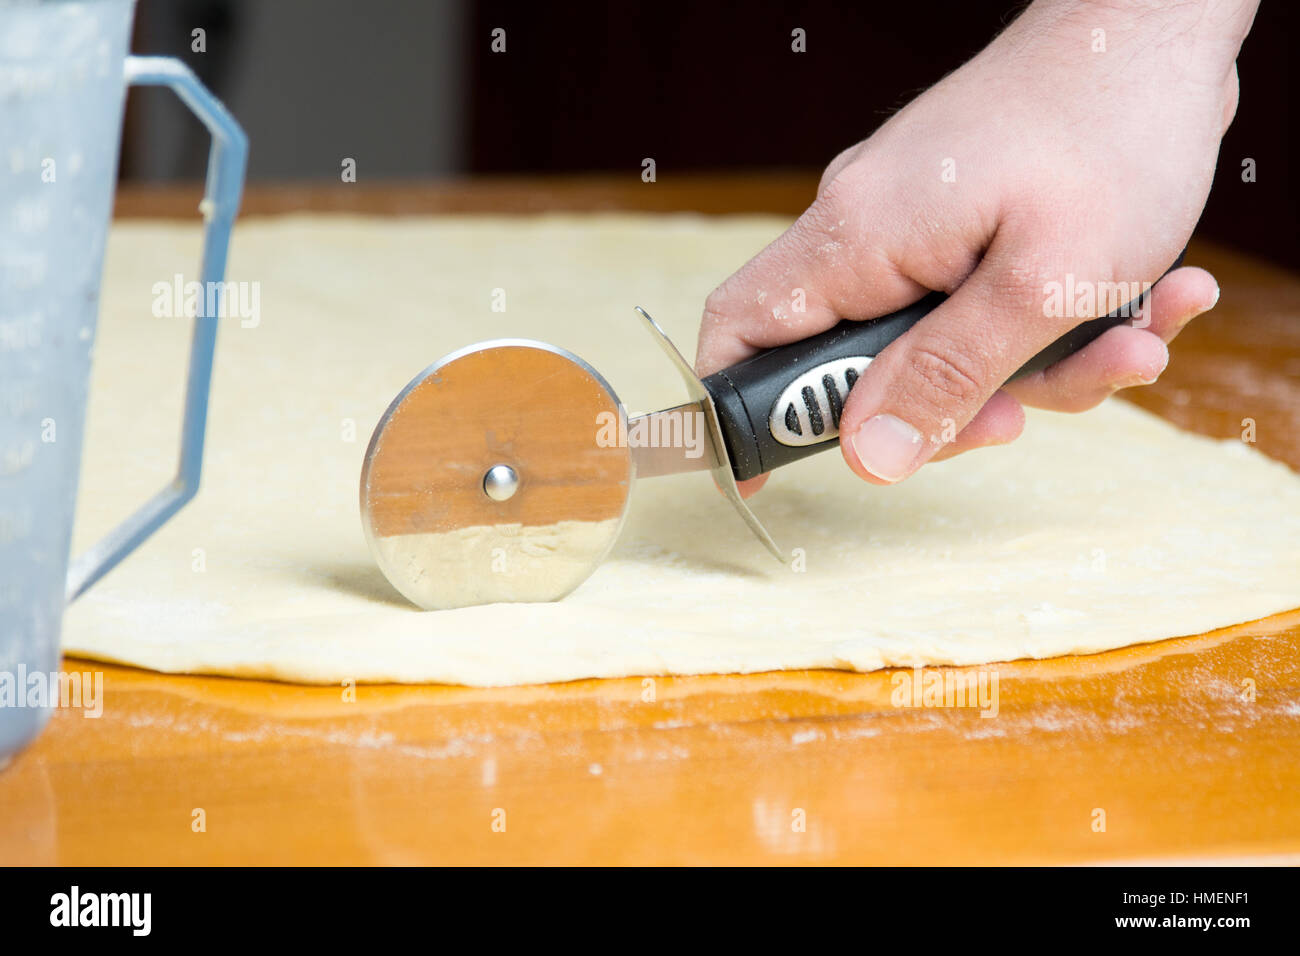 Mann schneiden Teig mit einem Roller-Messer Stockfoto